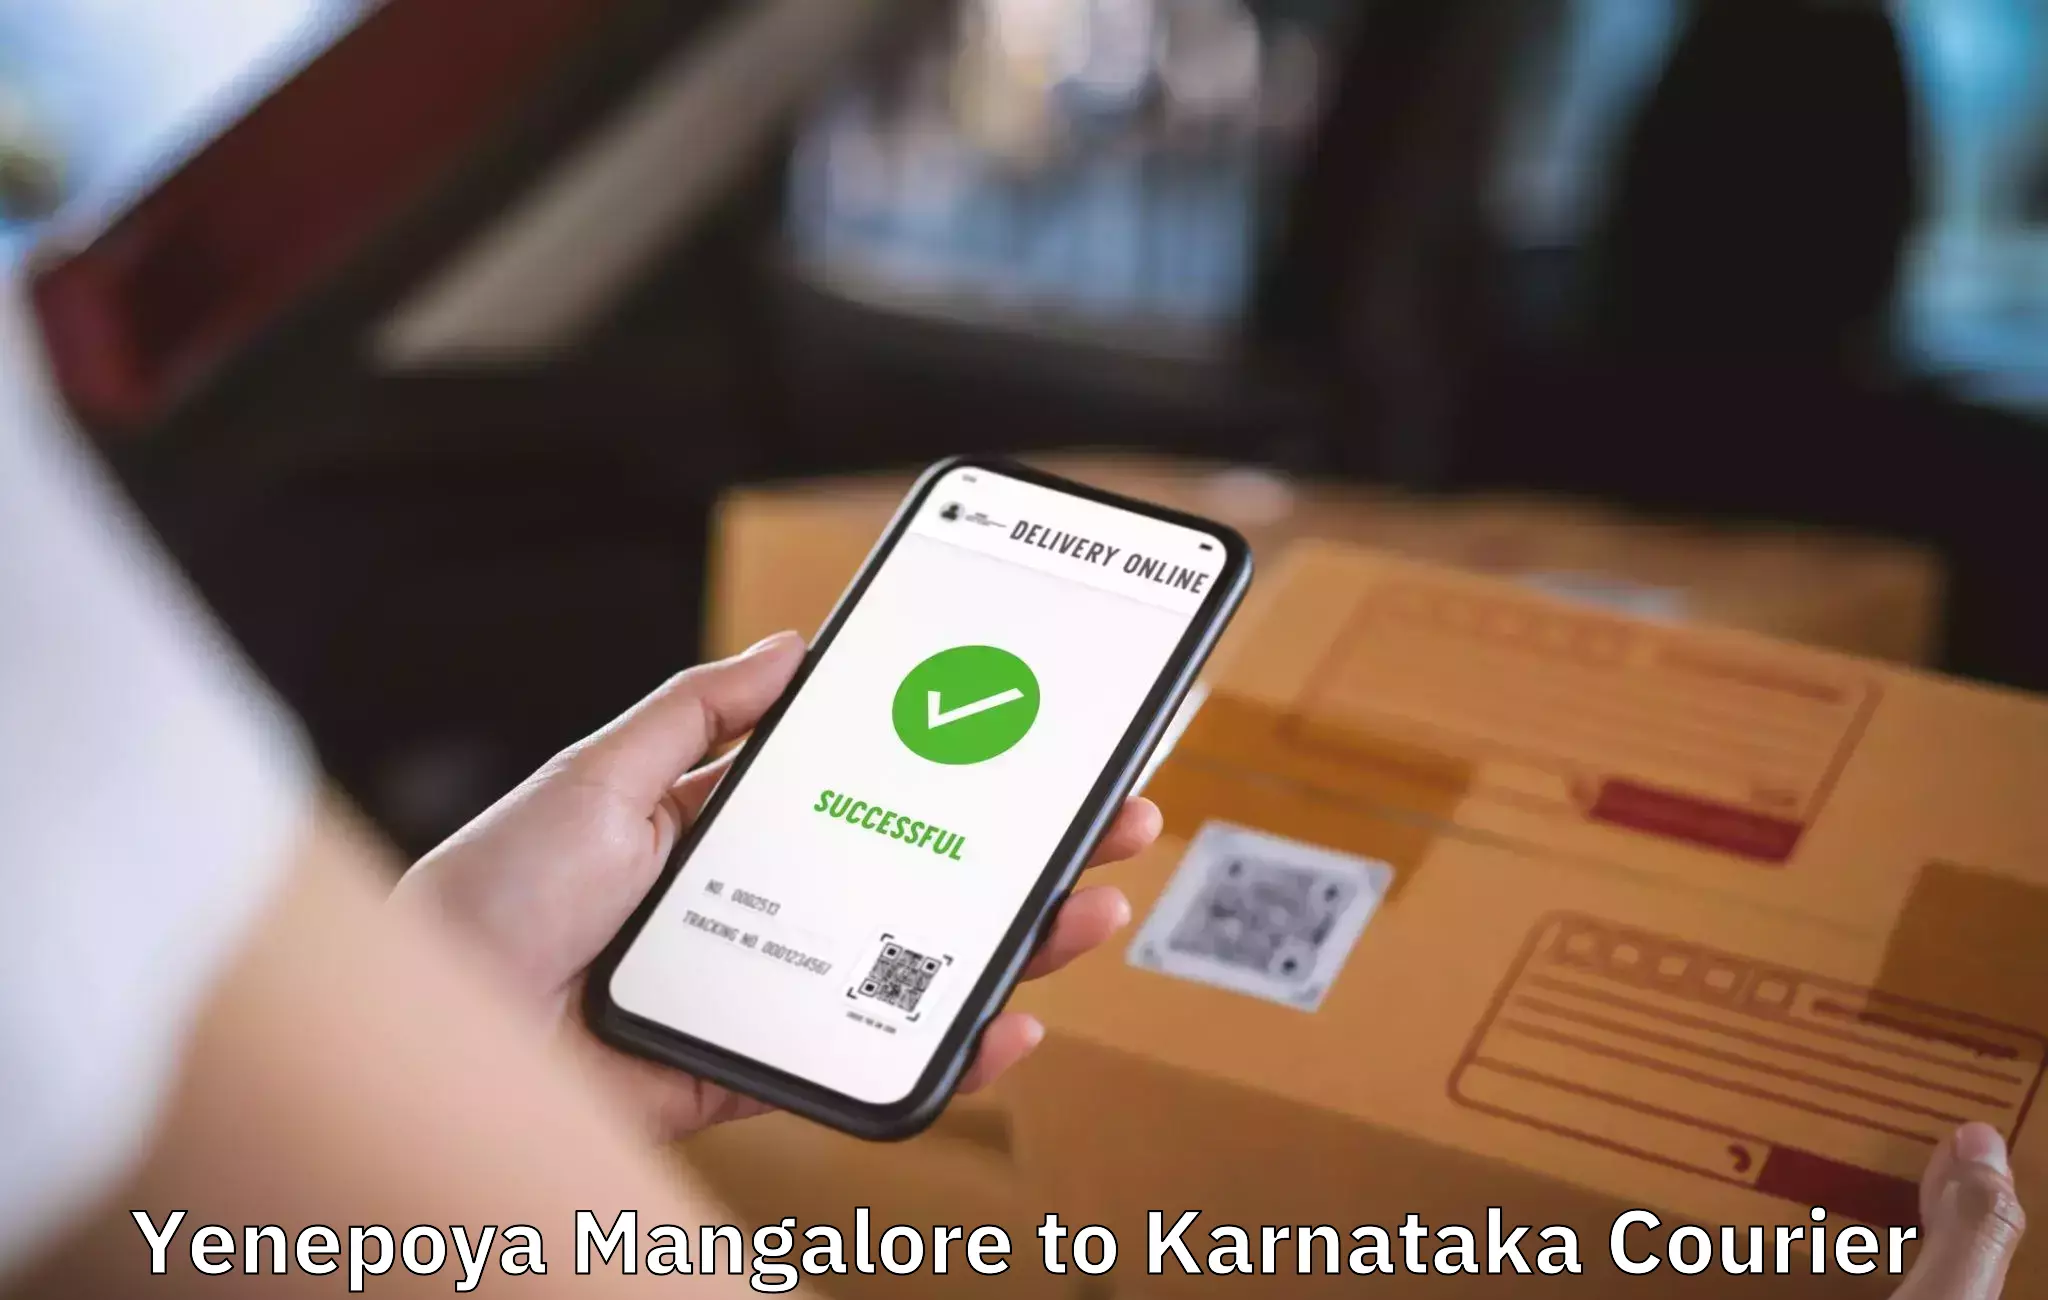 High-quality moving services Yenepoya Mangalore to Kudligi